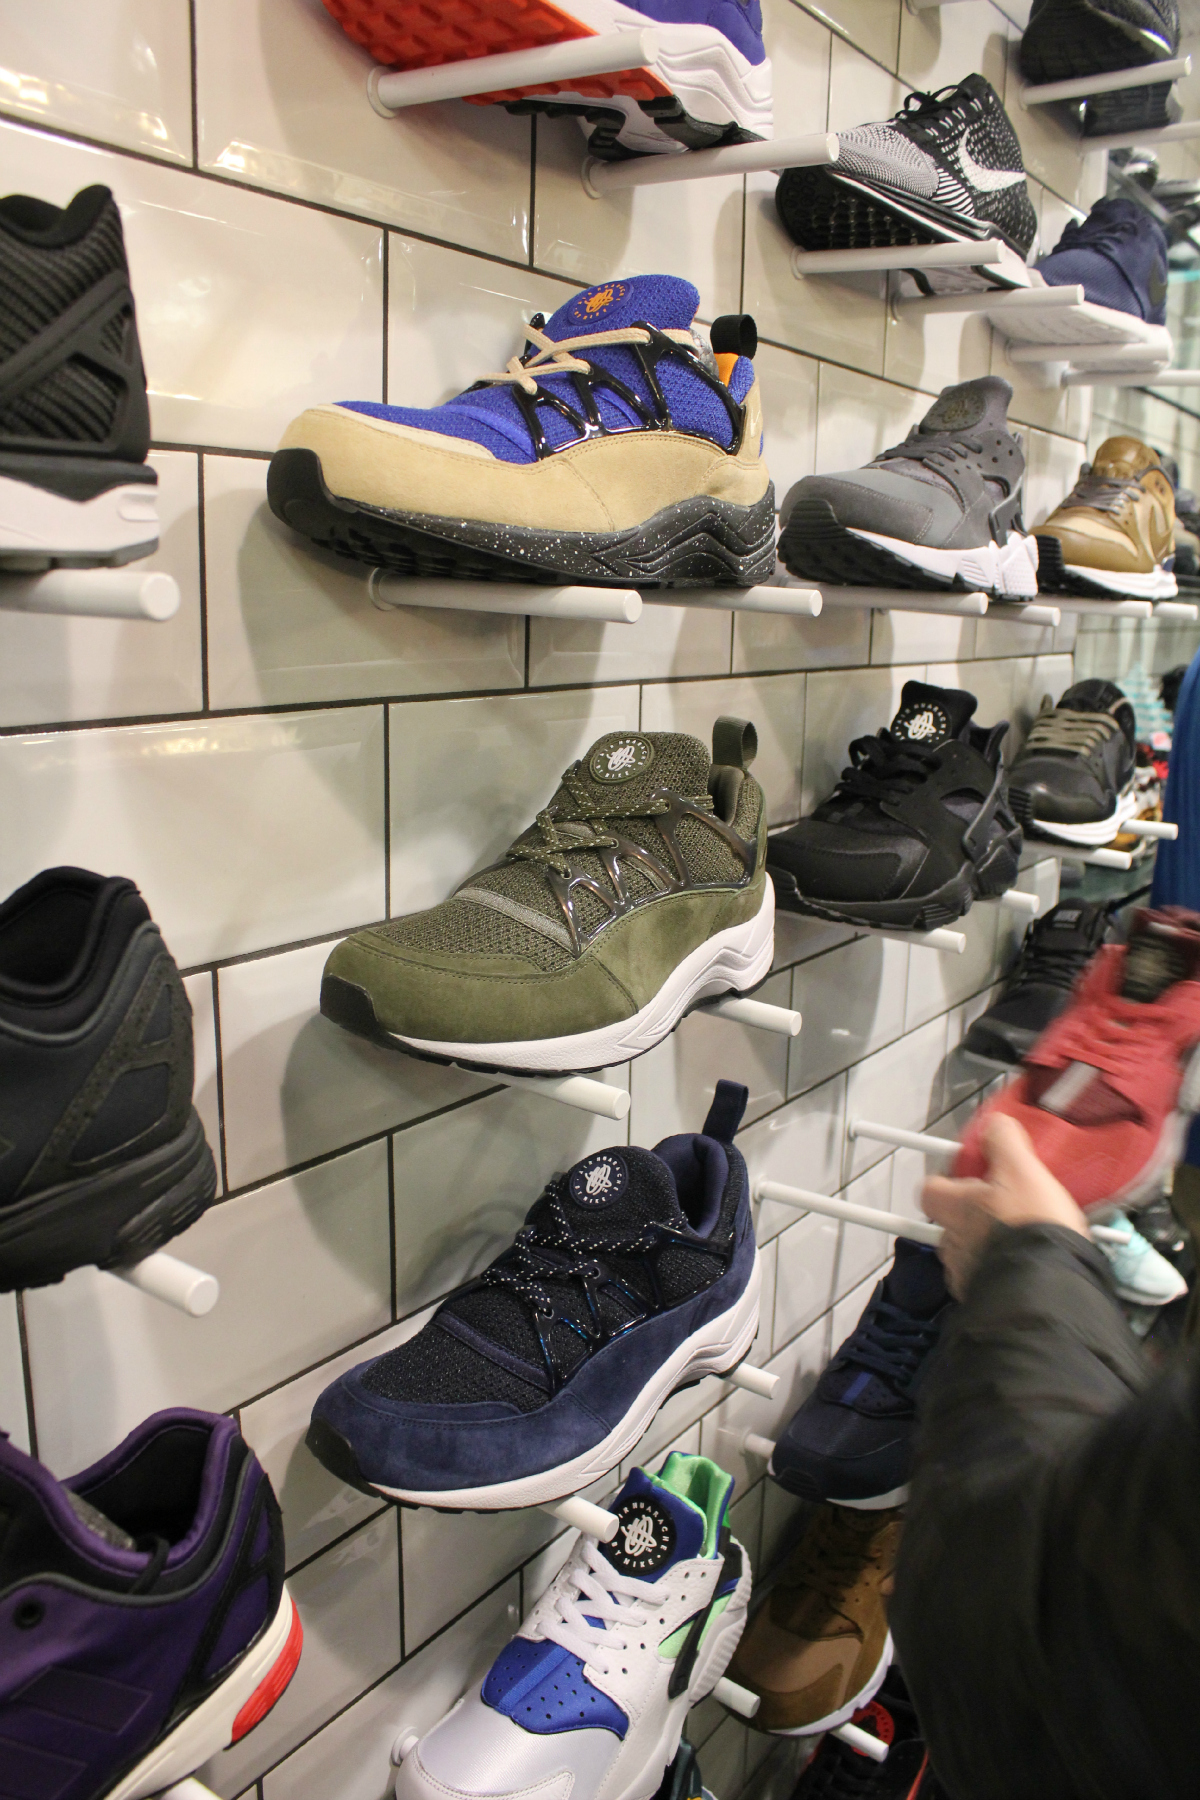 negozi di sneakers a milano